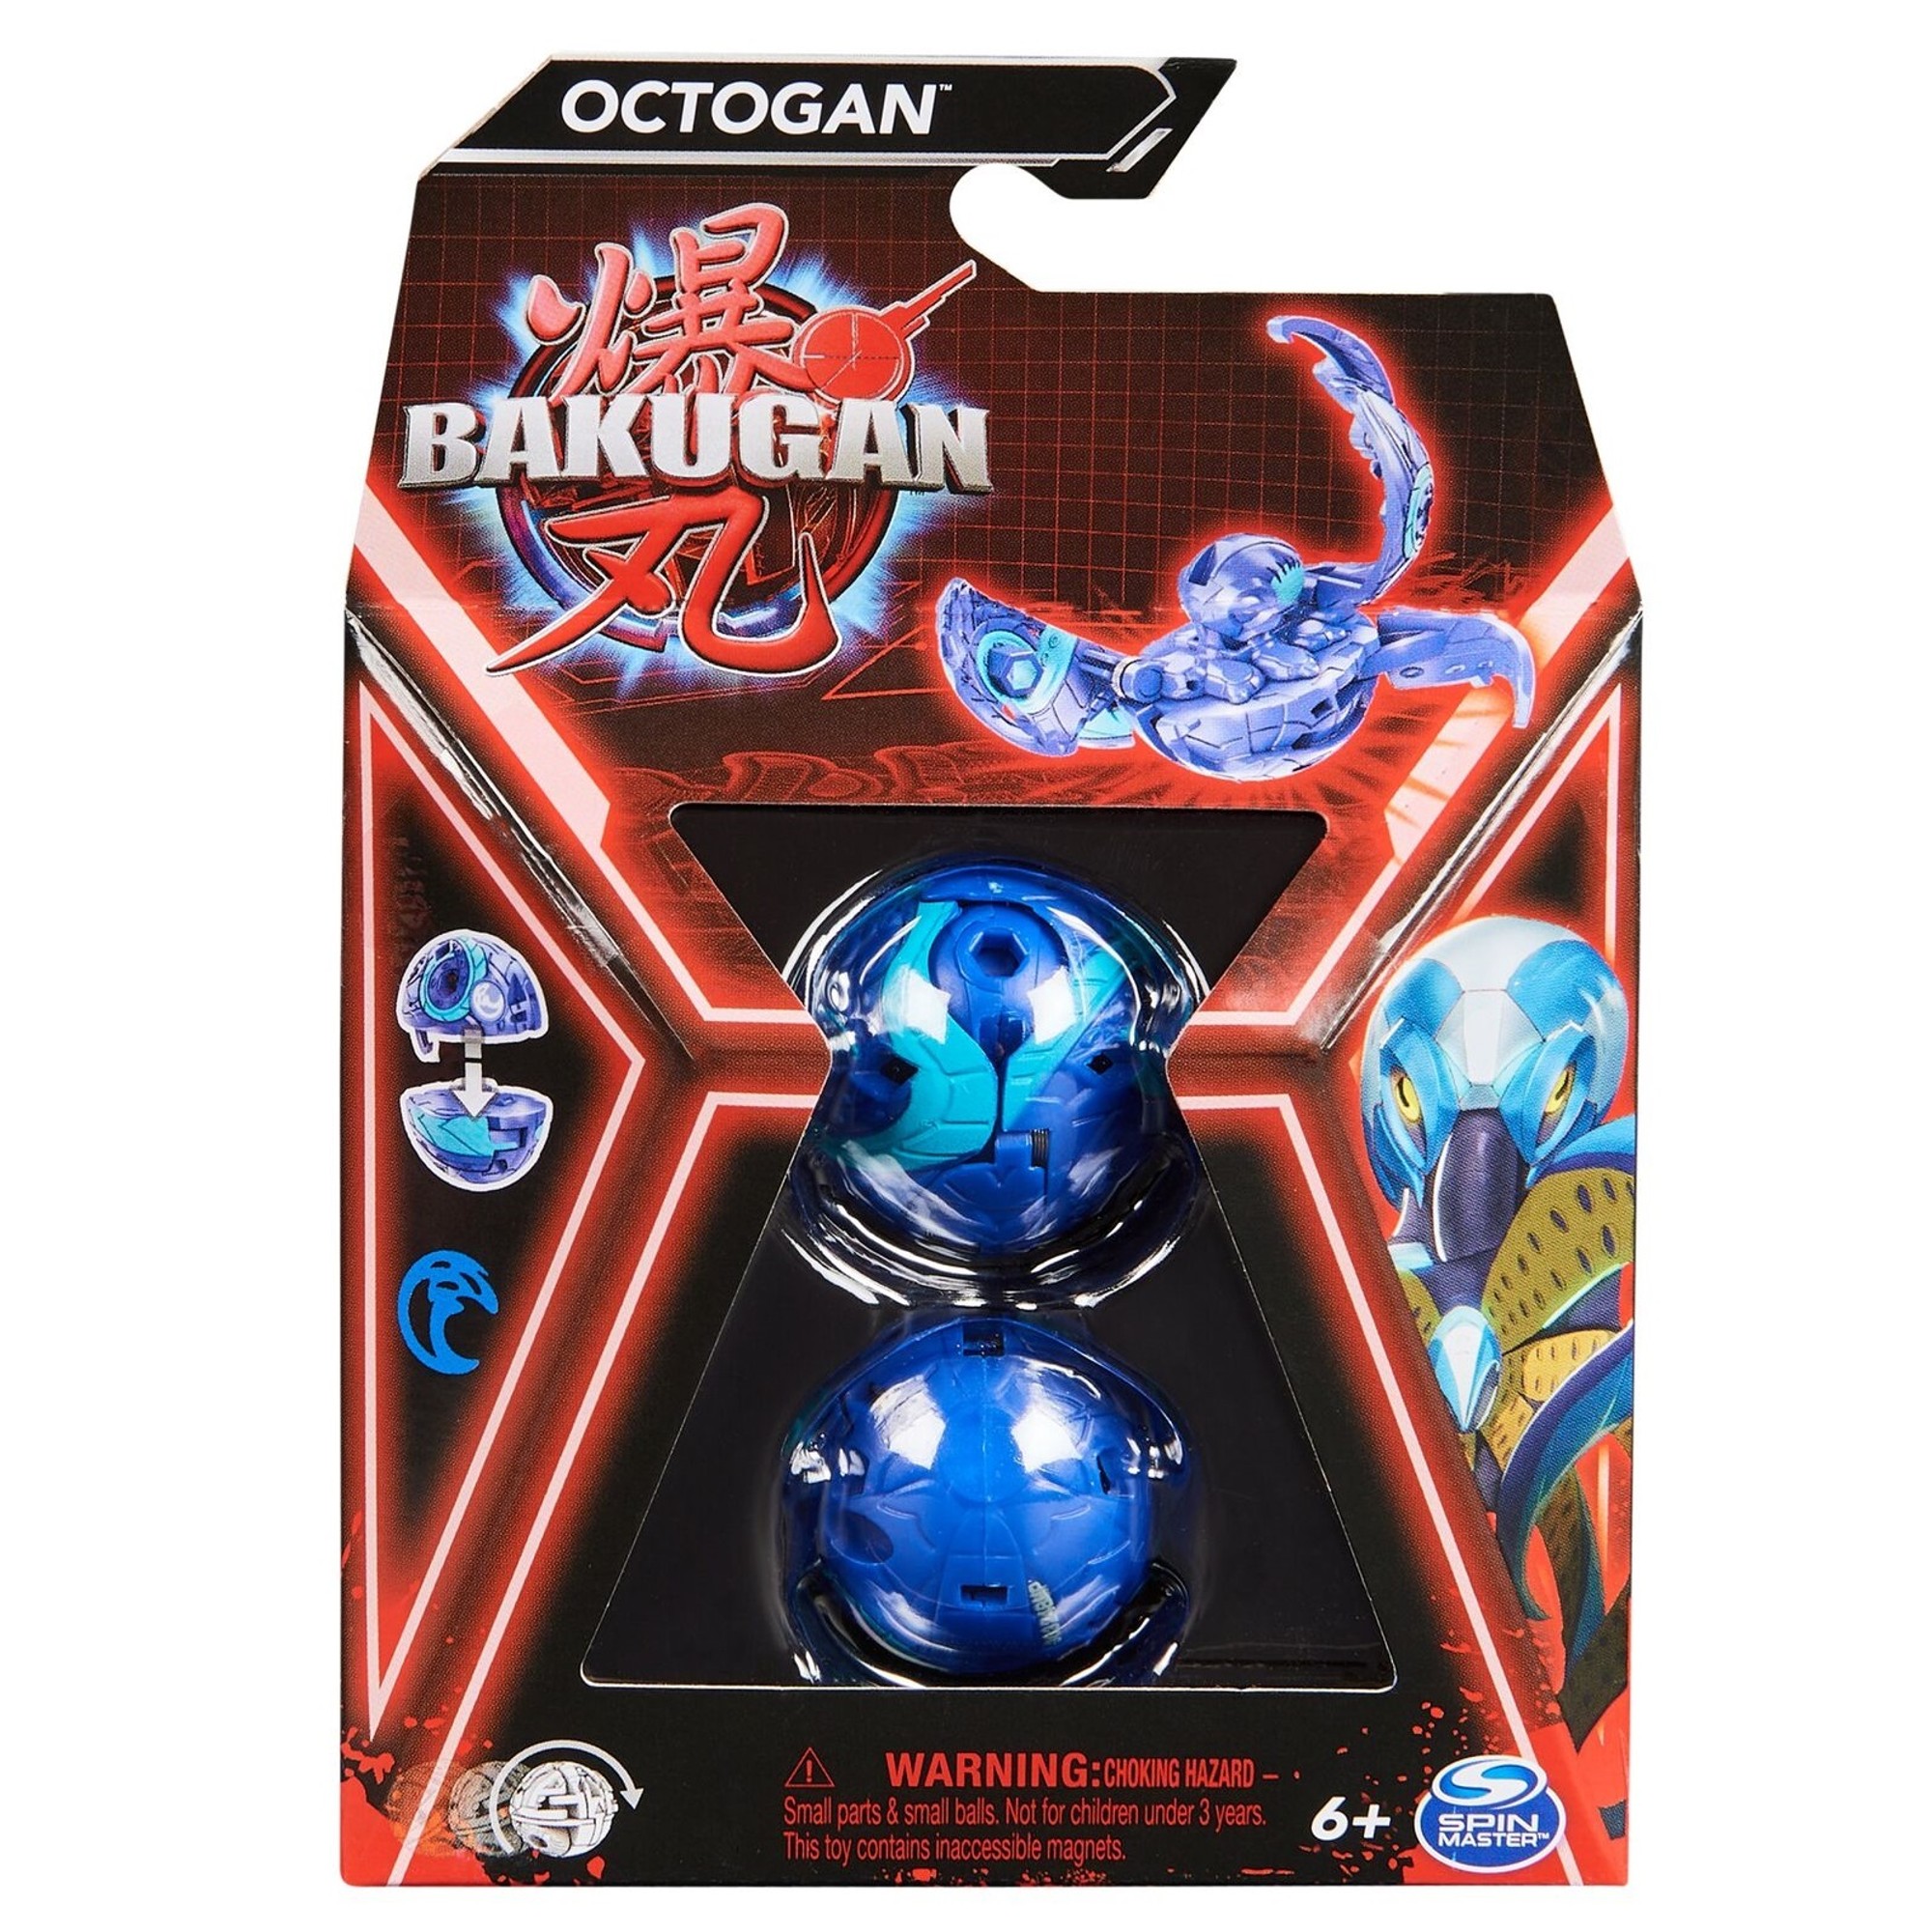 Bakugan Octogan Niebieski figurka bitewna transformujca + karty